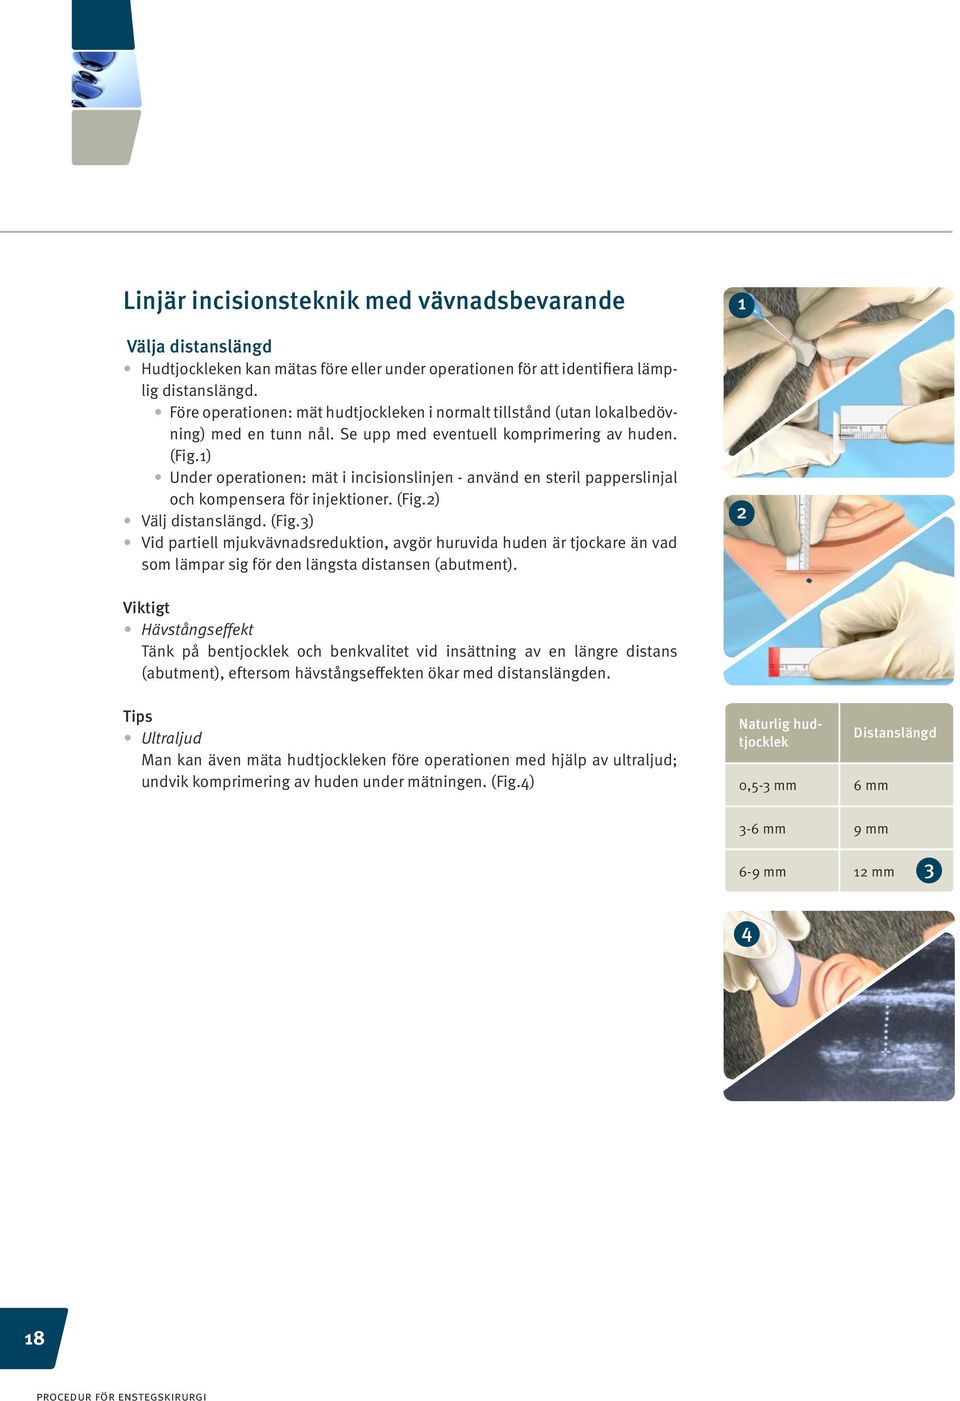 1) Under operationen: mät i incisionslinjen - använd en steril papperslinjal och kompensera för injektioner. (Fig.